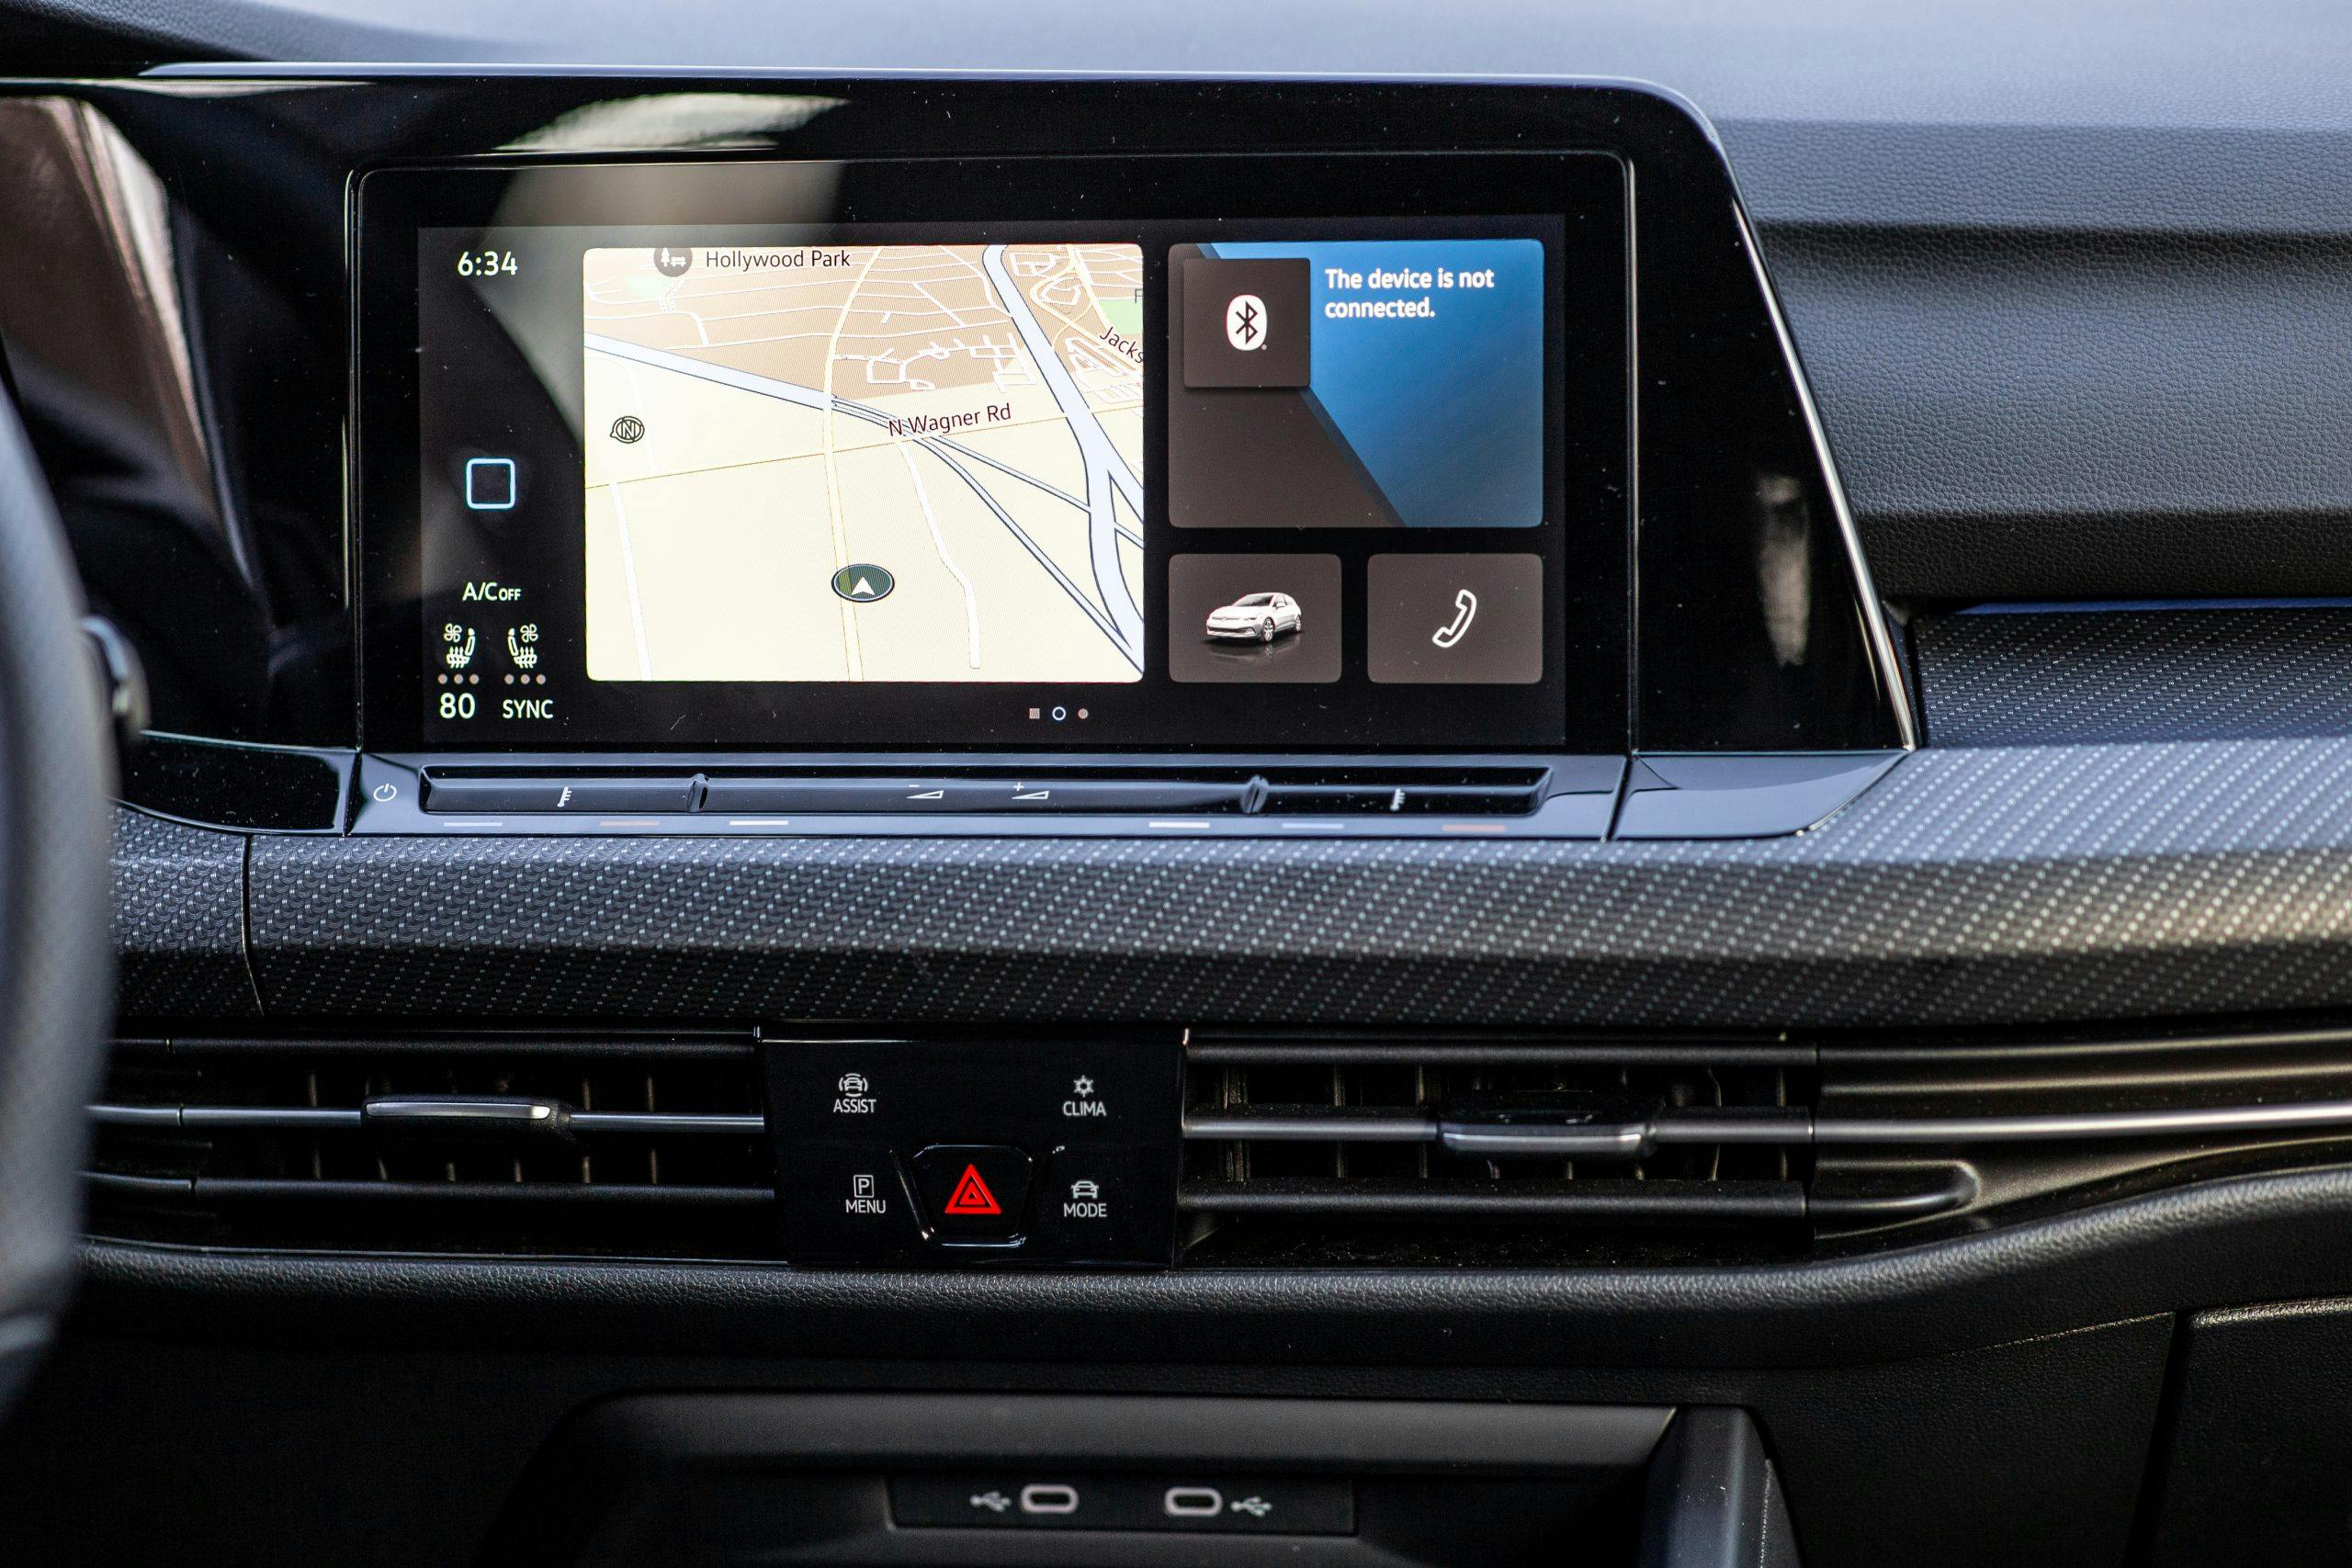 VW Golf R infotainment screen navigation closeup